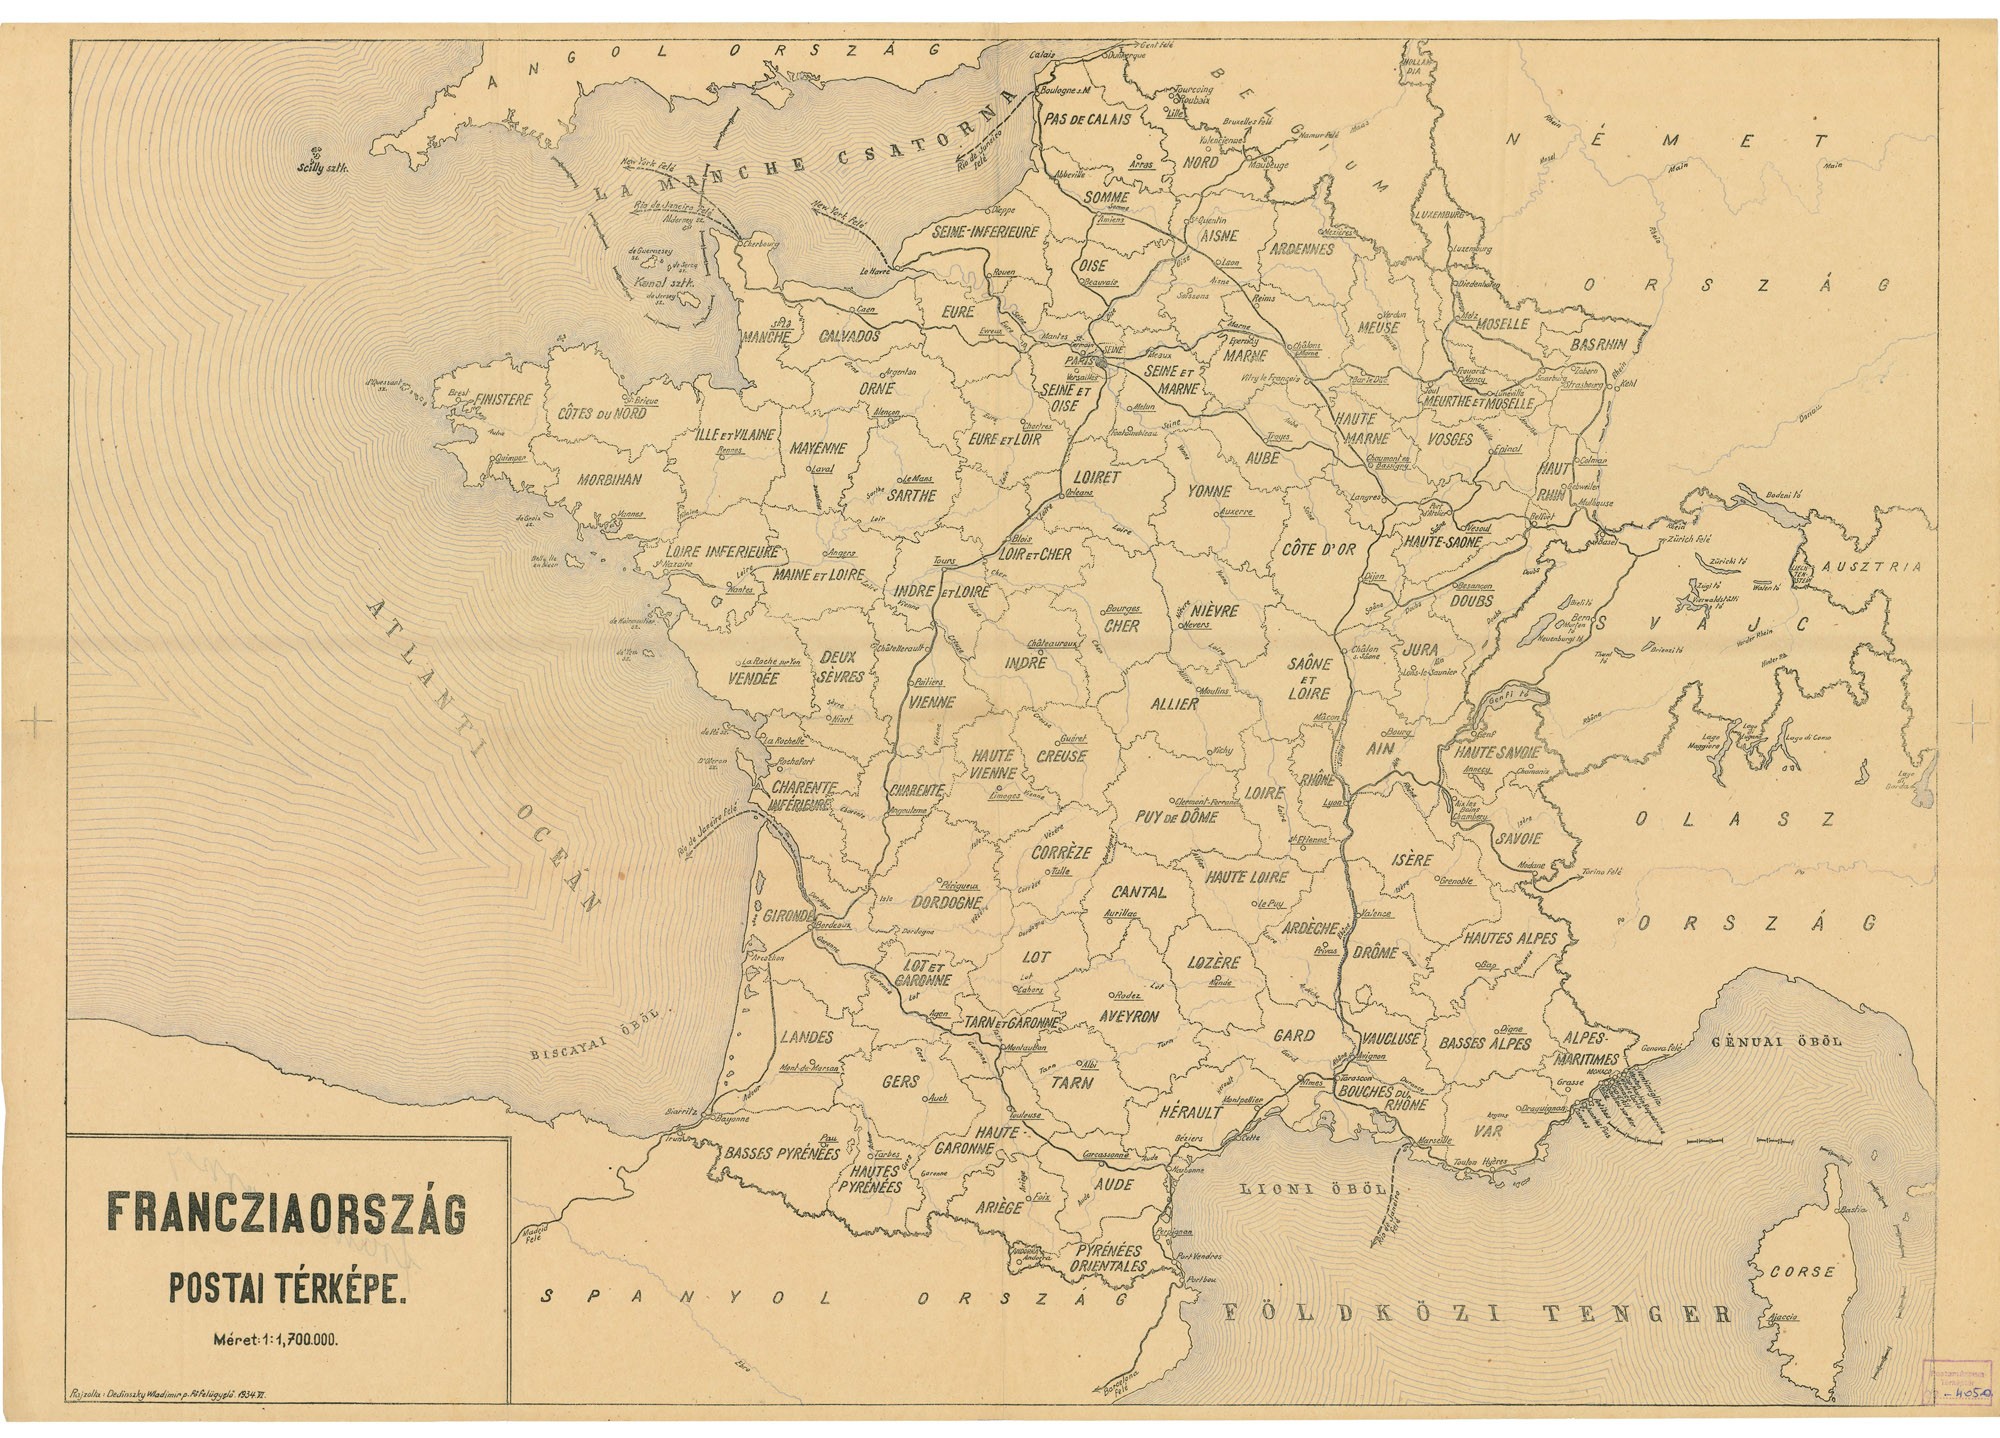 Franciaország postai térképe, 1934 (Postamúzeum CC BY-NC-SA)